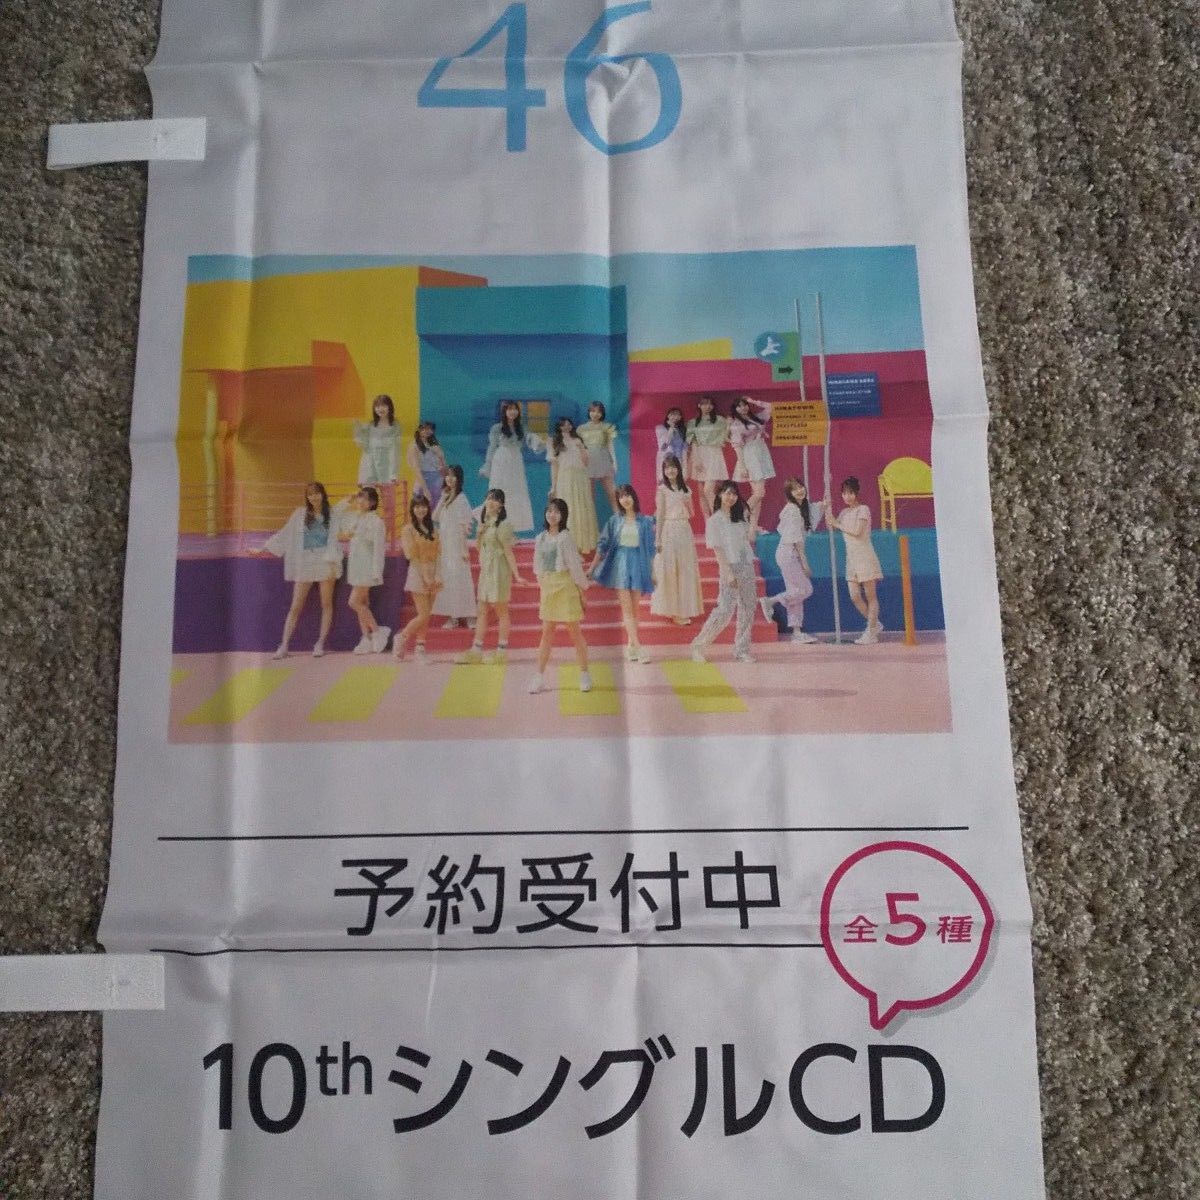 日向坂46 ポスター 写真 10thシングル 広告 のぼり旗 店頭幕 アイドル CD